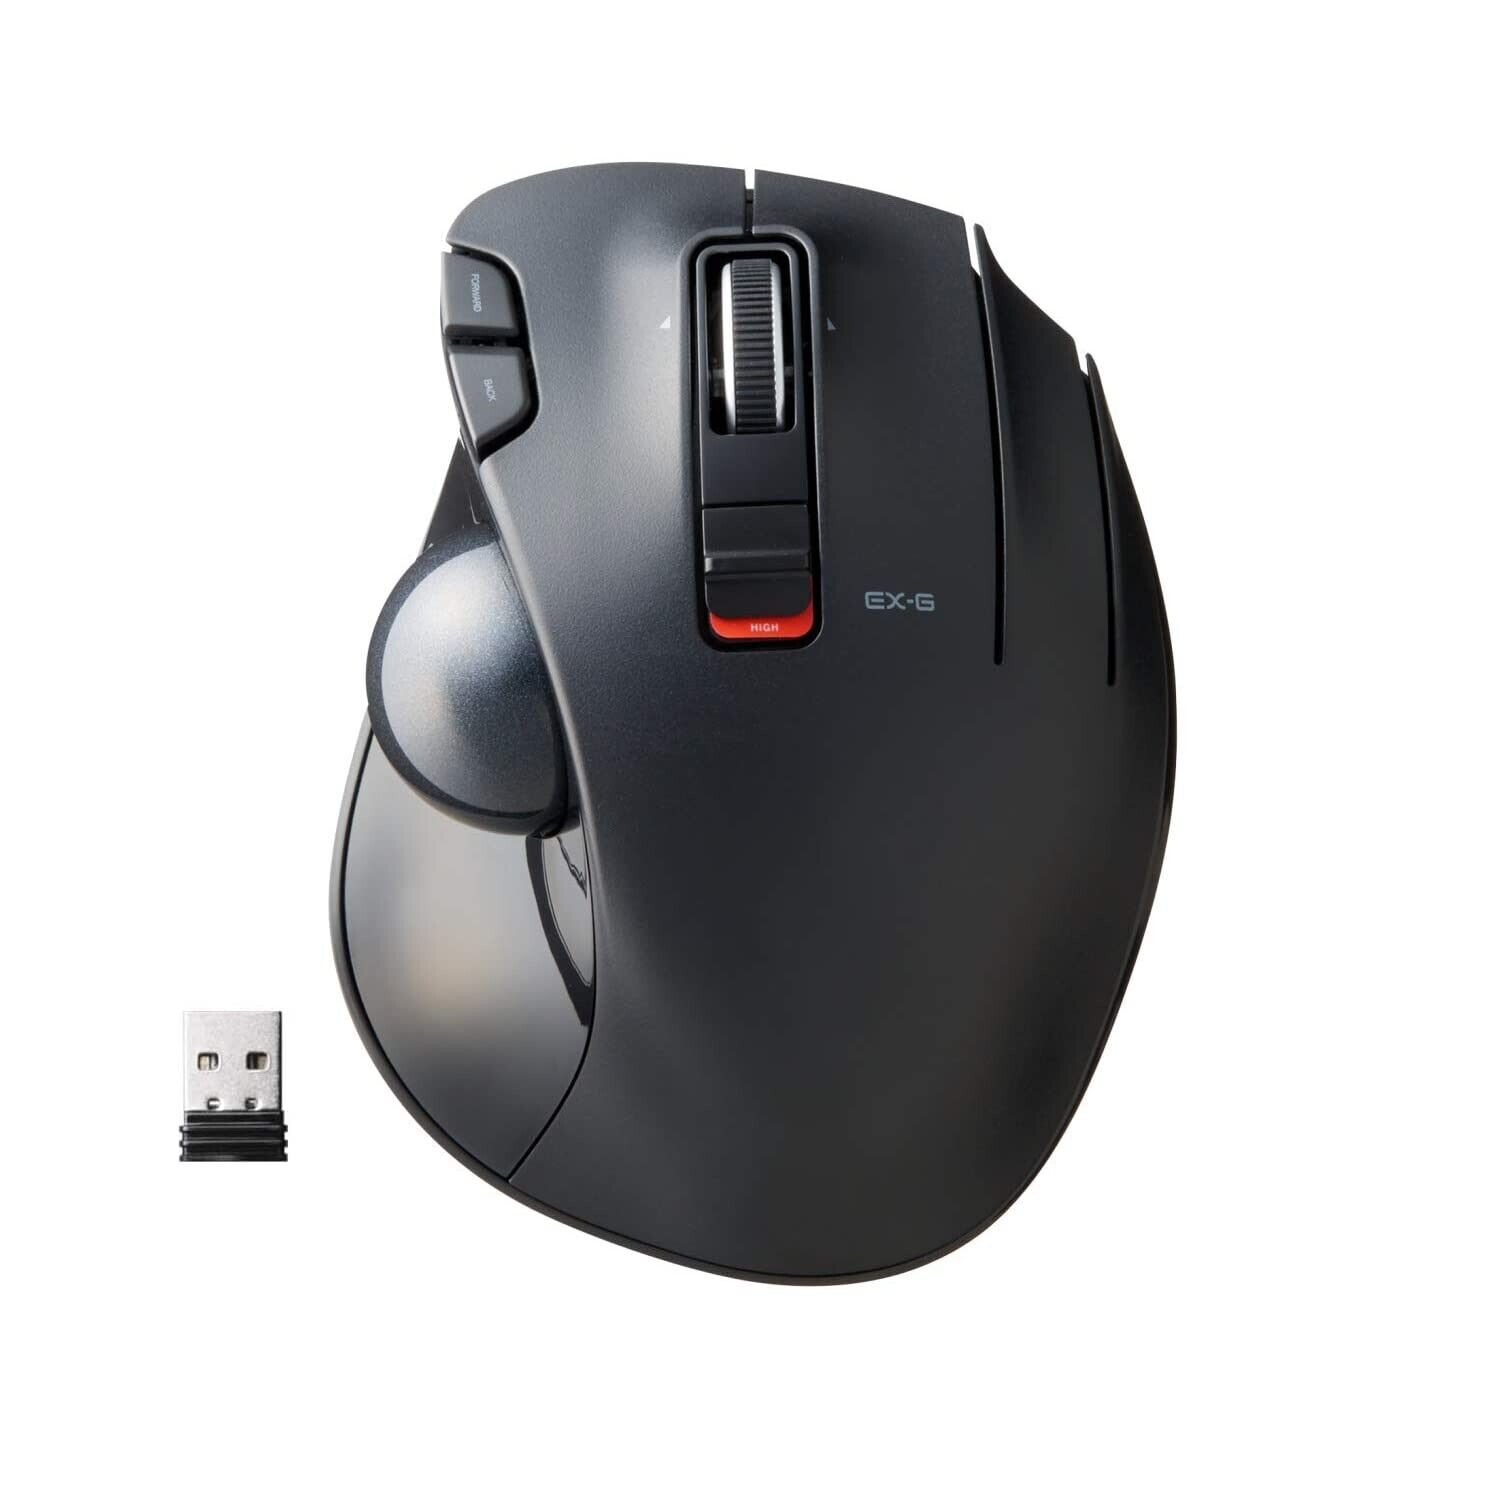 ELECOM EX-G Trackball Mouse, 2.4GHz Wireless, Thumb Control, Sculpted Ergonom...